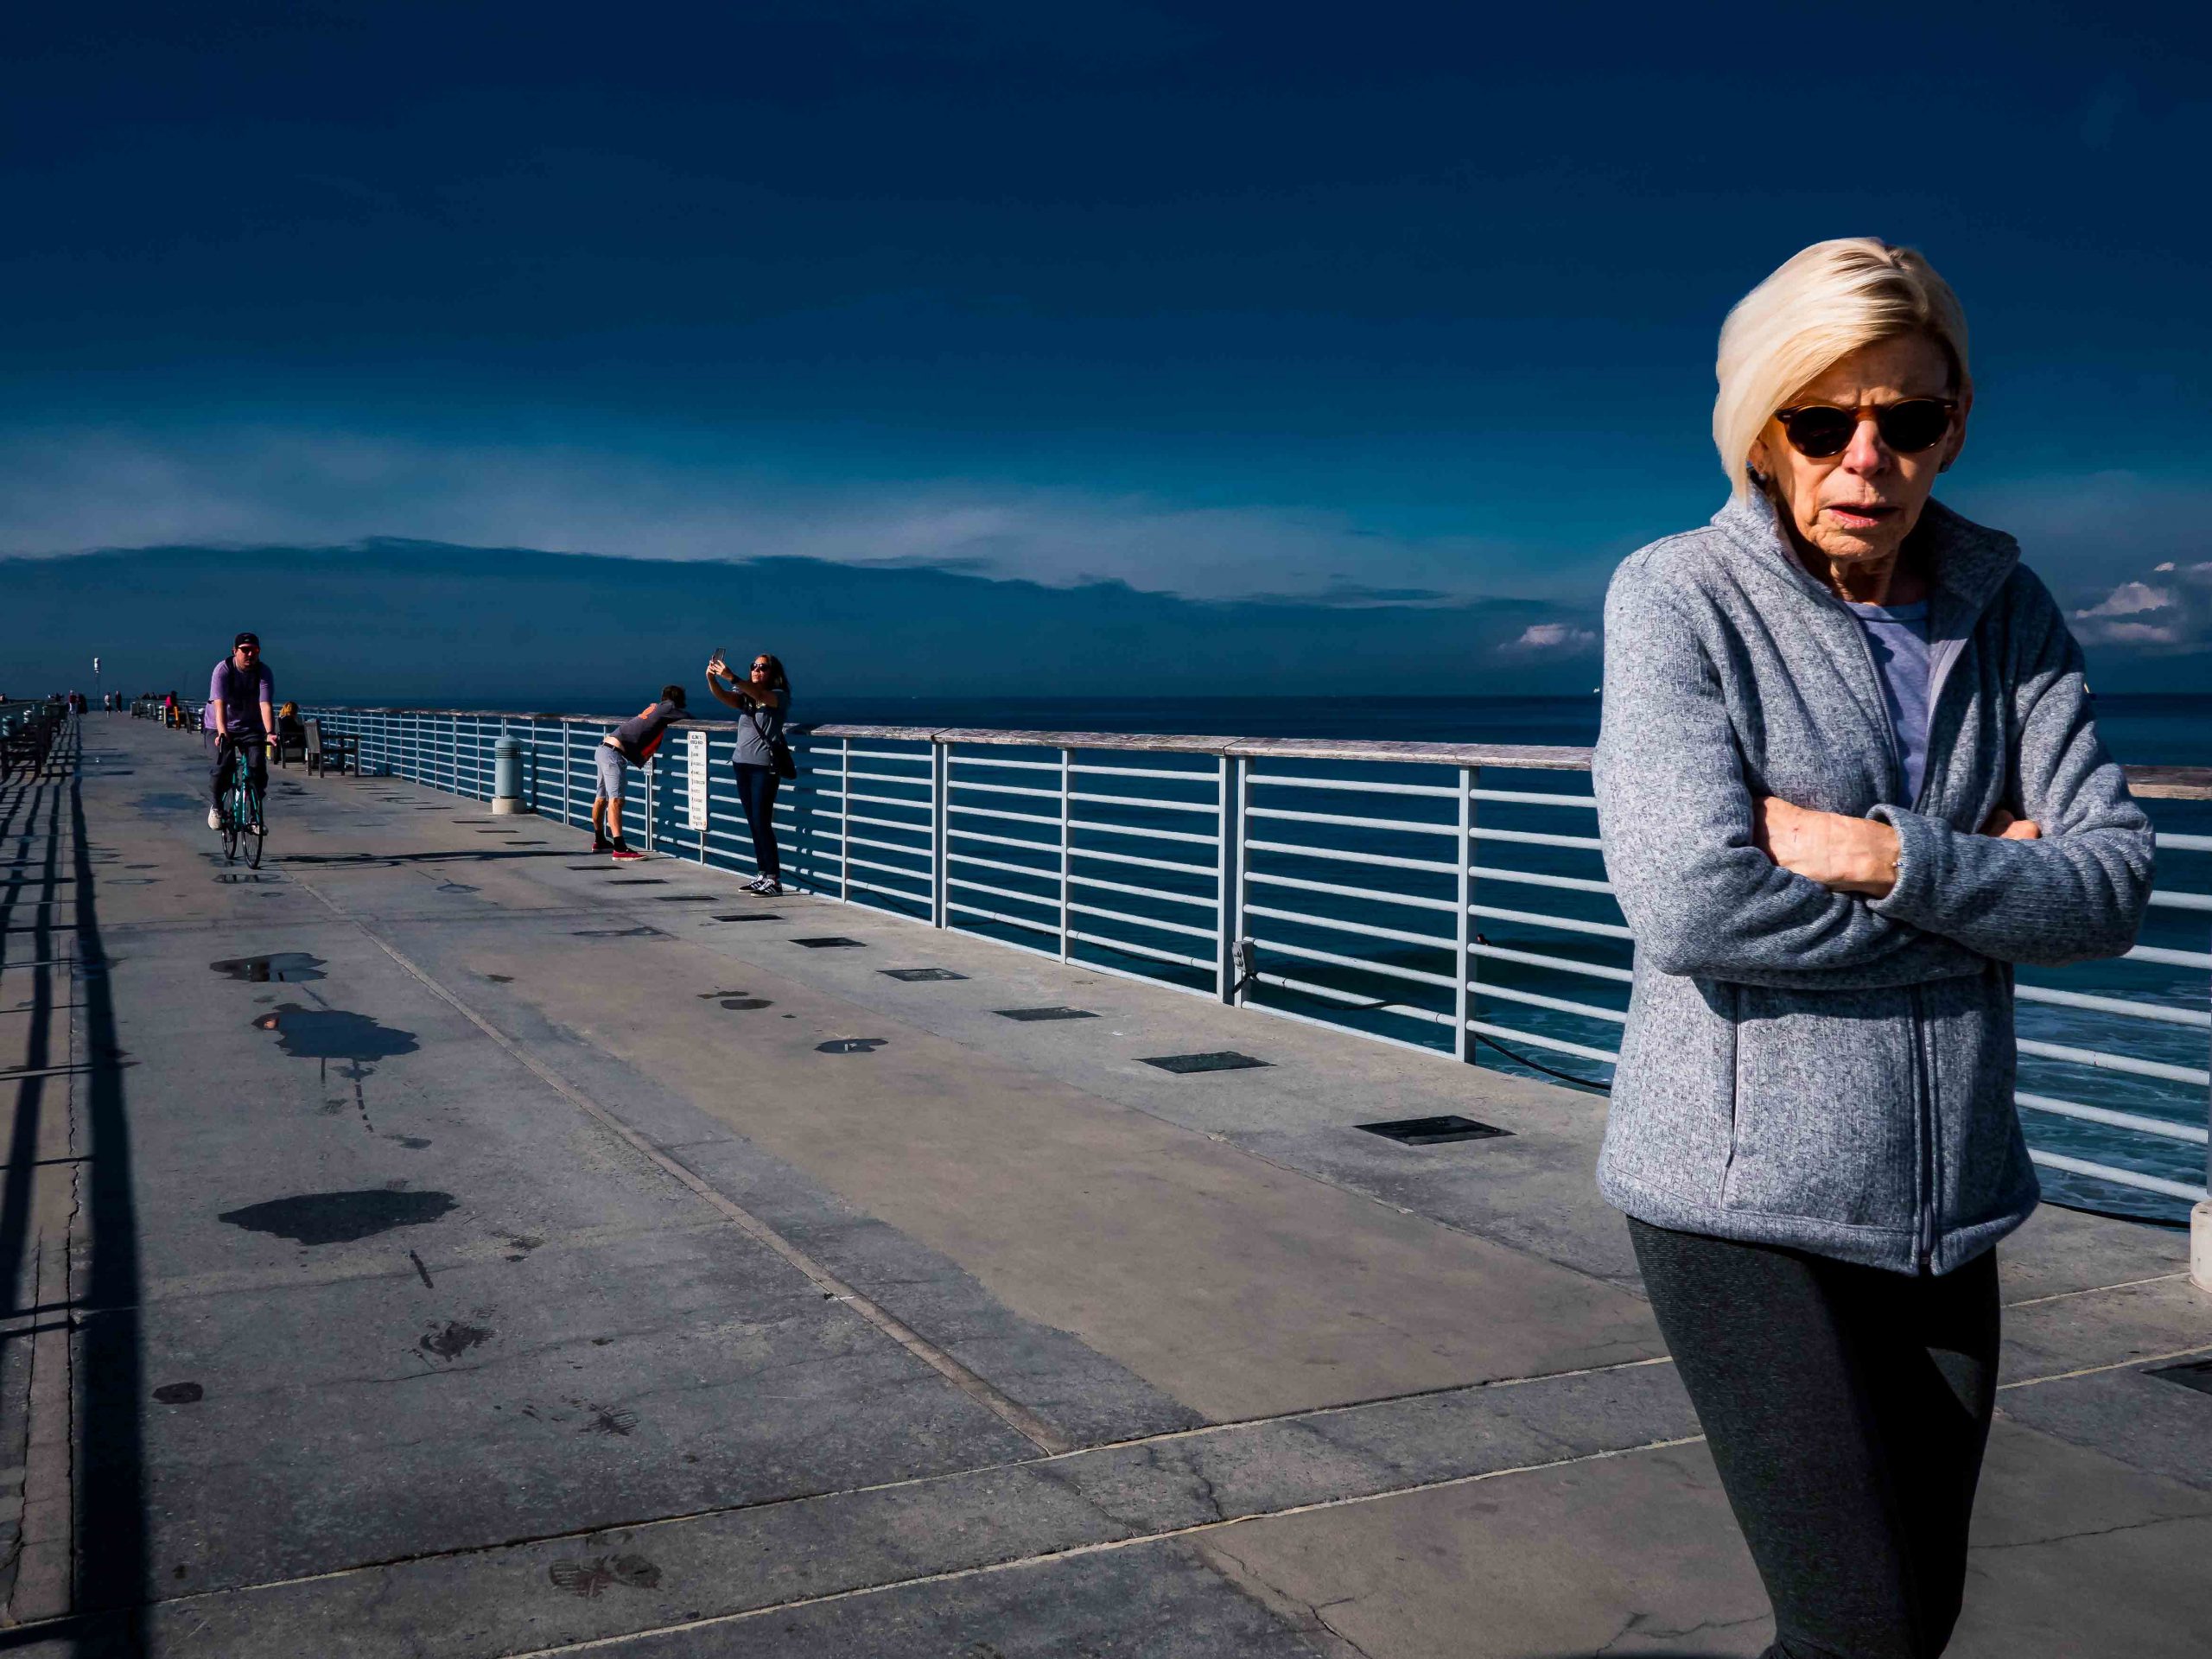 Lady on a pier in Manhattan Beach, California